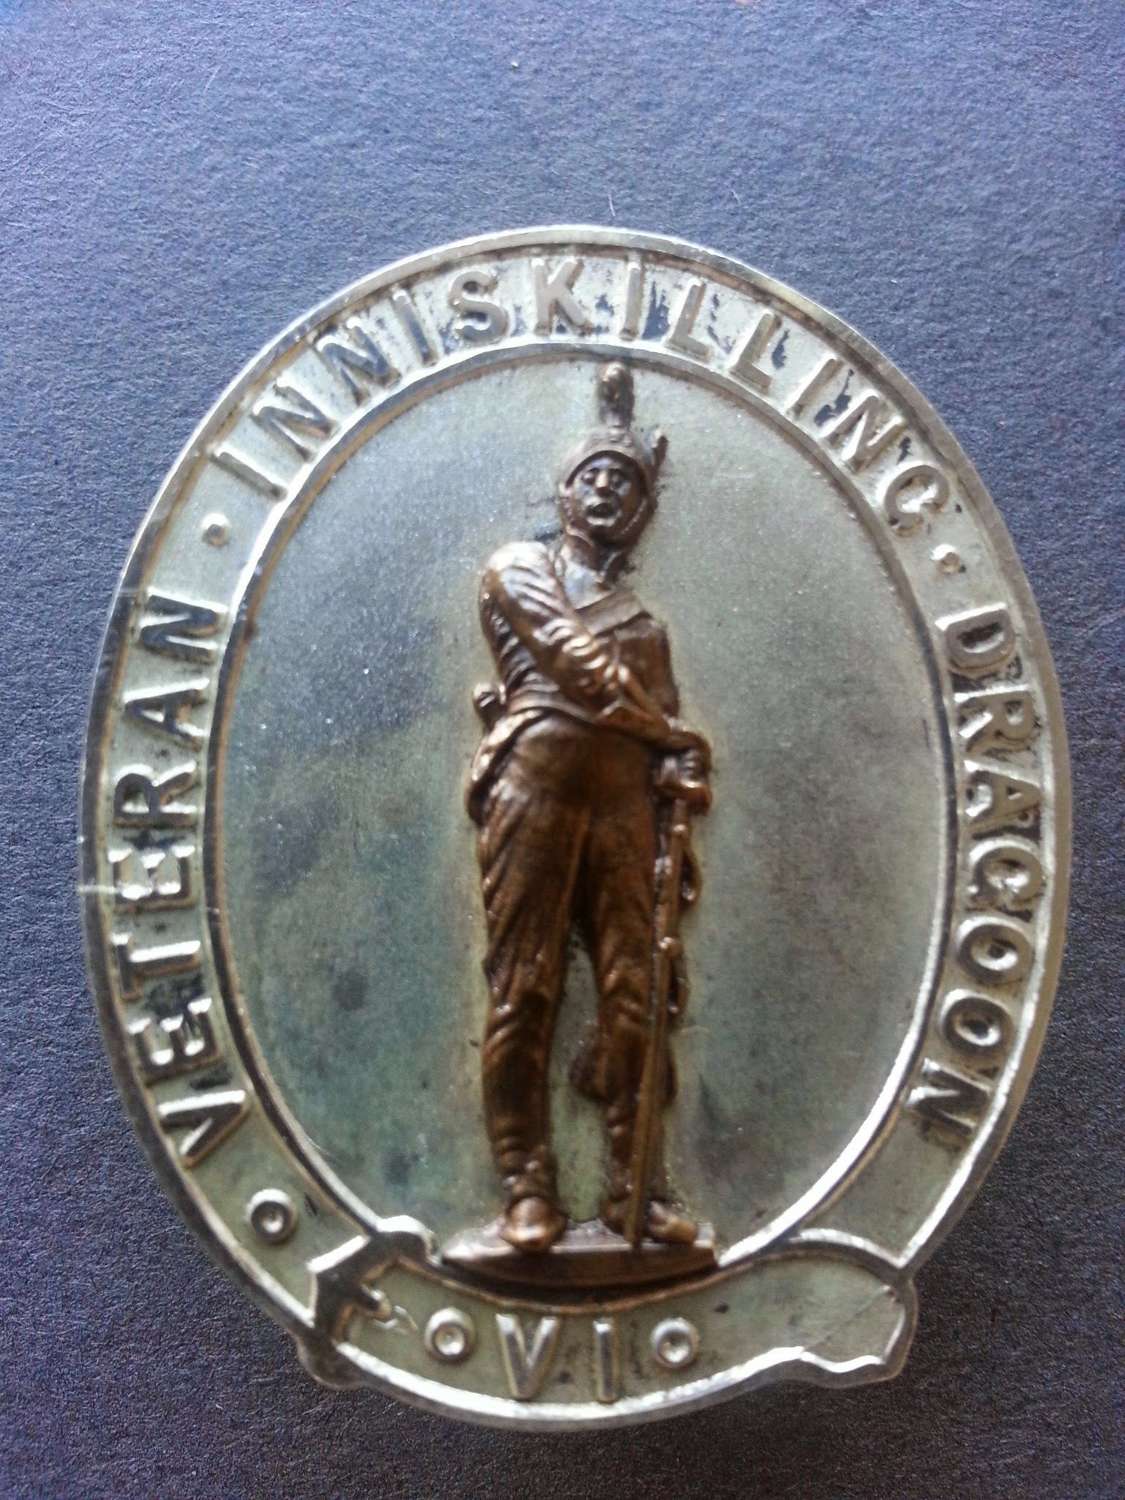 Solid Silver VI Inniskilling Dragoons Veterans Membership Badge